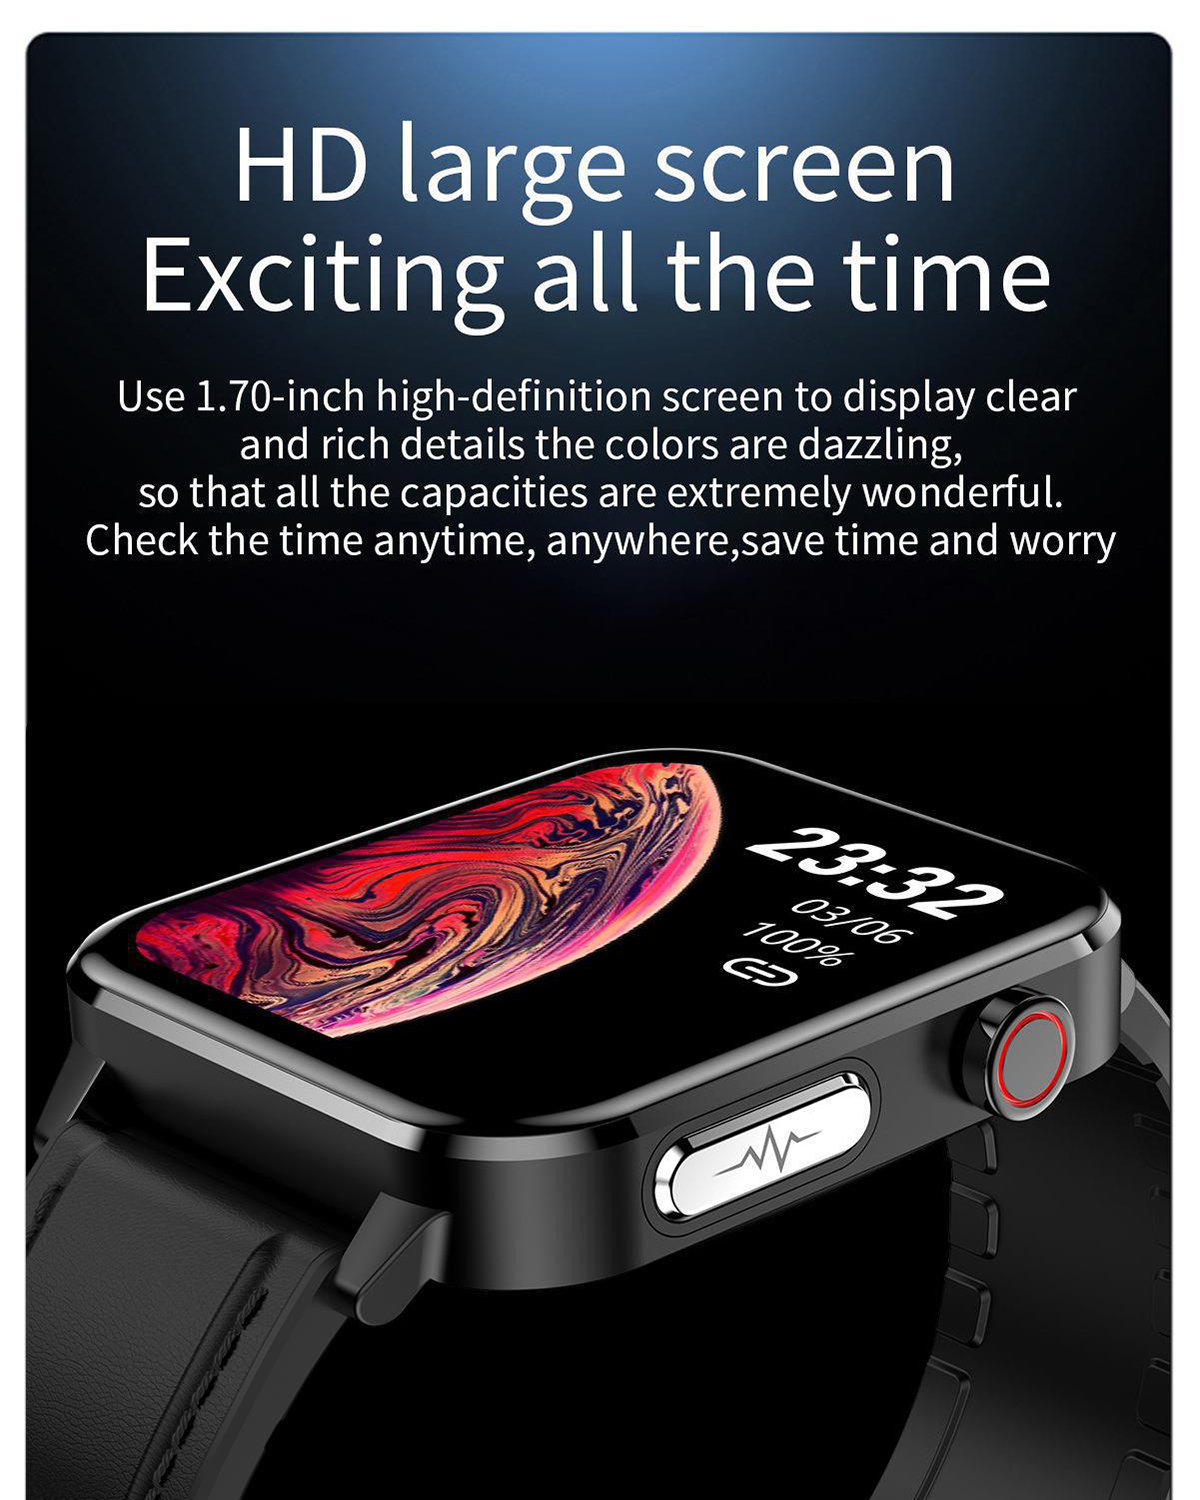 Leben Ihr Ultralange Smartwatch Akkulaufzeit! Smartwatch, verändert Leder, die Die BRIGHTAKE Braun